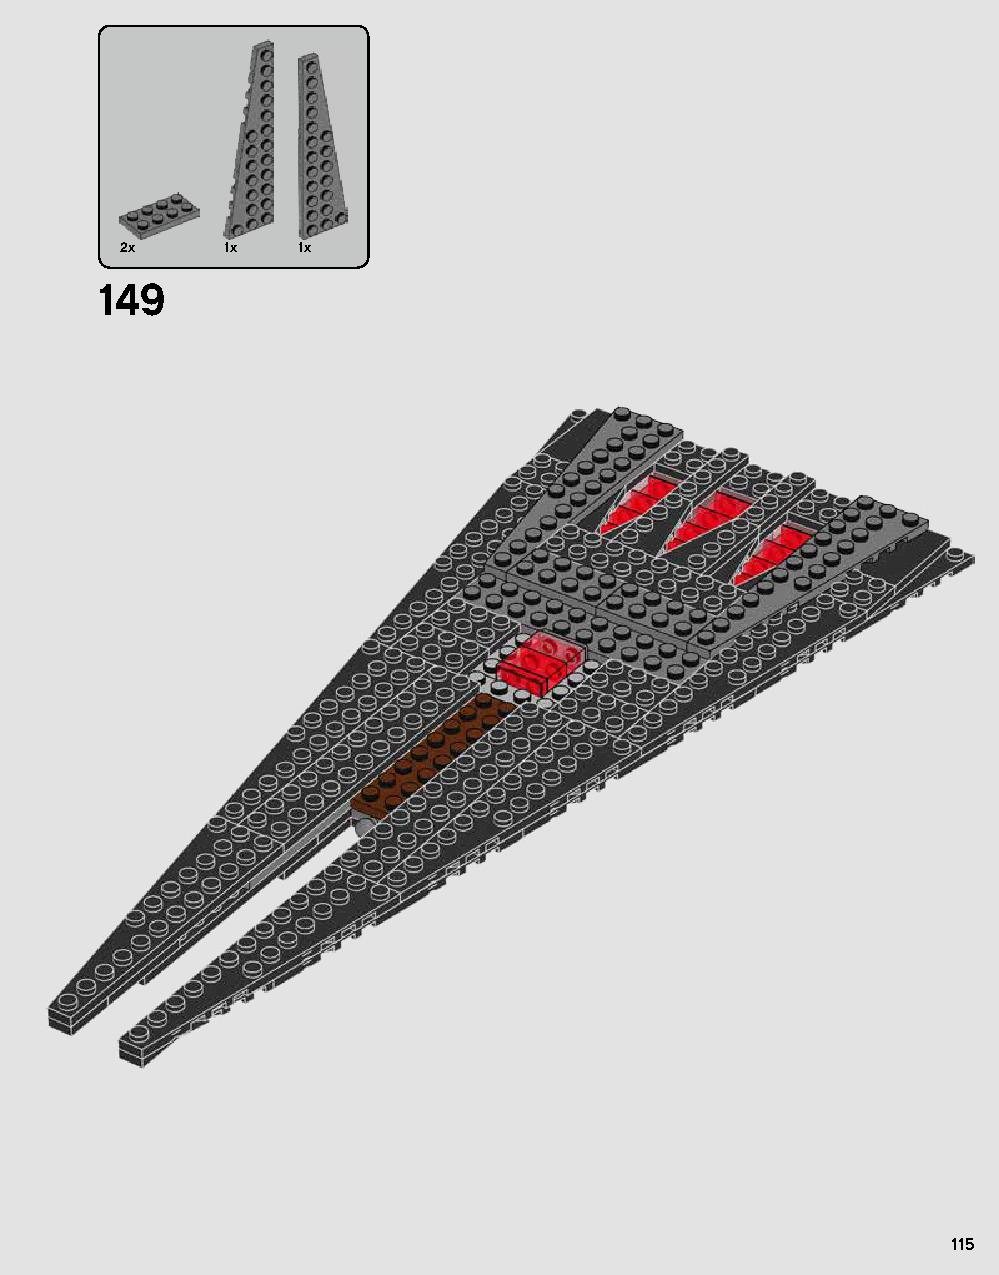 ダース・ベイダーの城 75251 レゴの商品情報 レゴの説明書・組立方法 115 page